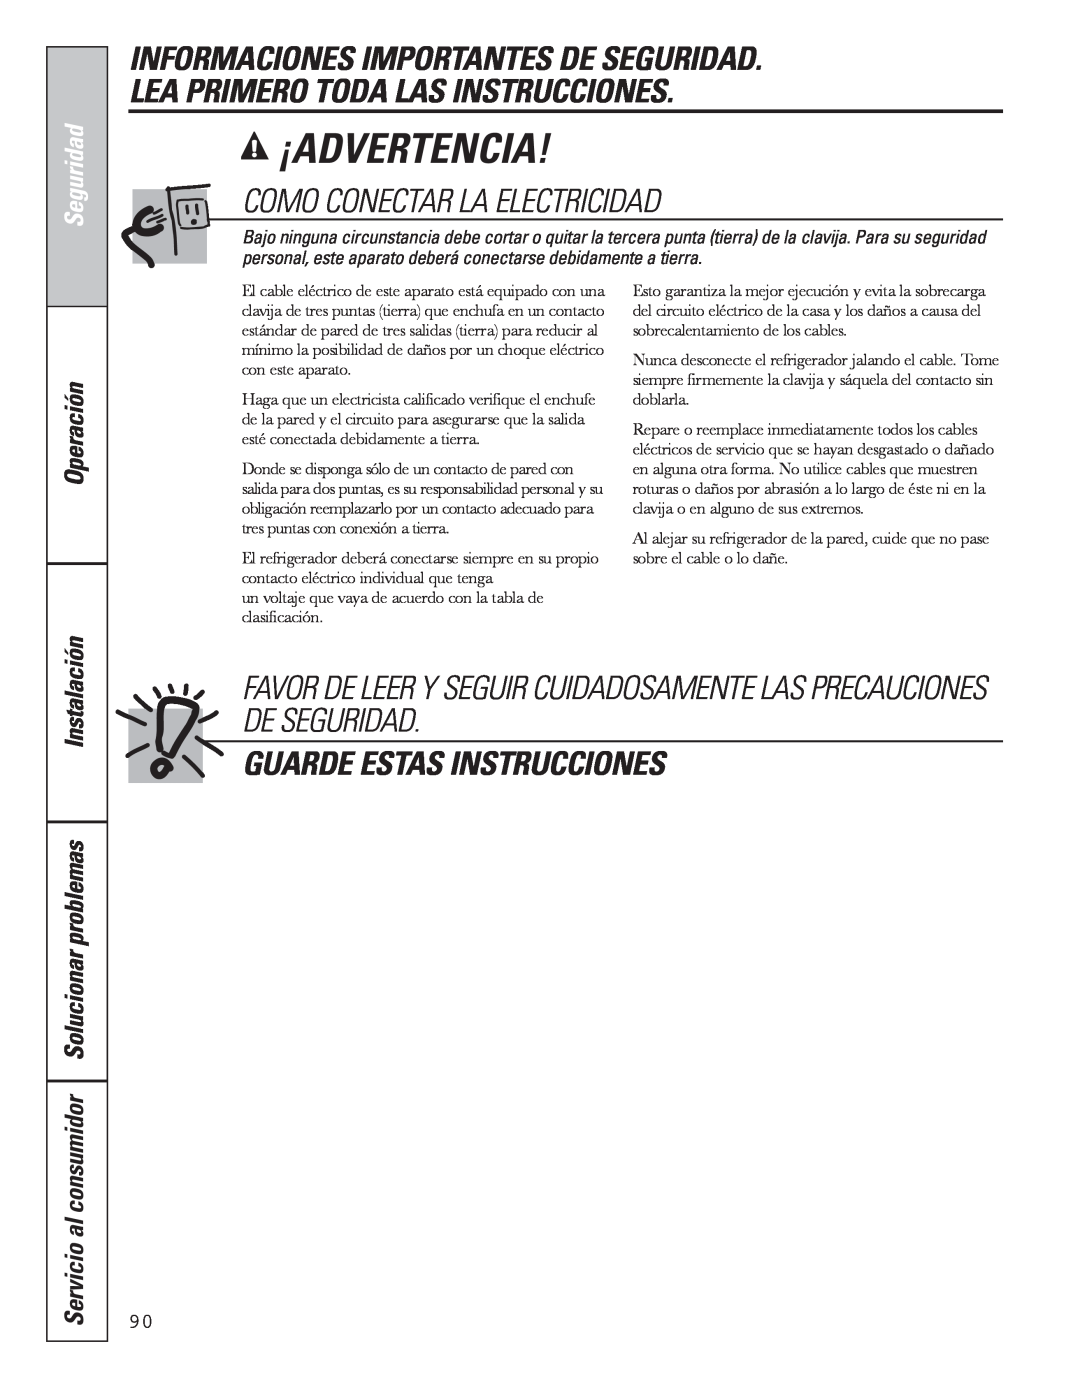 GE 49-60637 Informaciones Importantes De Seguridad, Lea Primero Toda Las Instrucciones, Como Conectar La Electricidad 